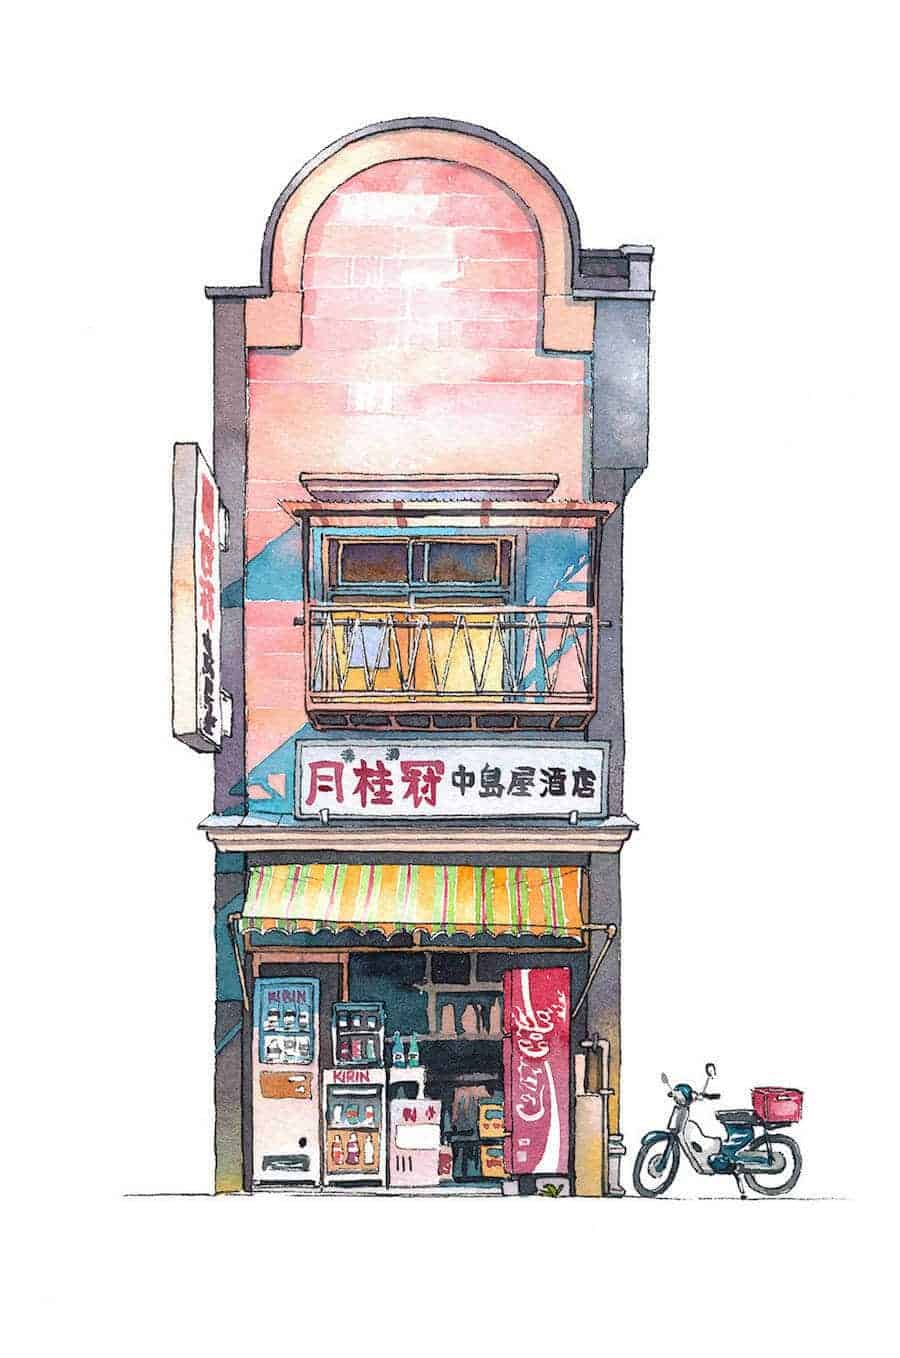 tekening van een winkeltje